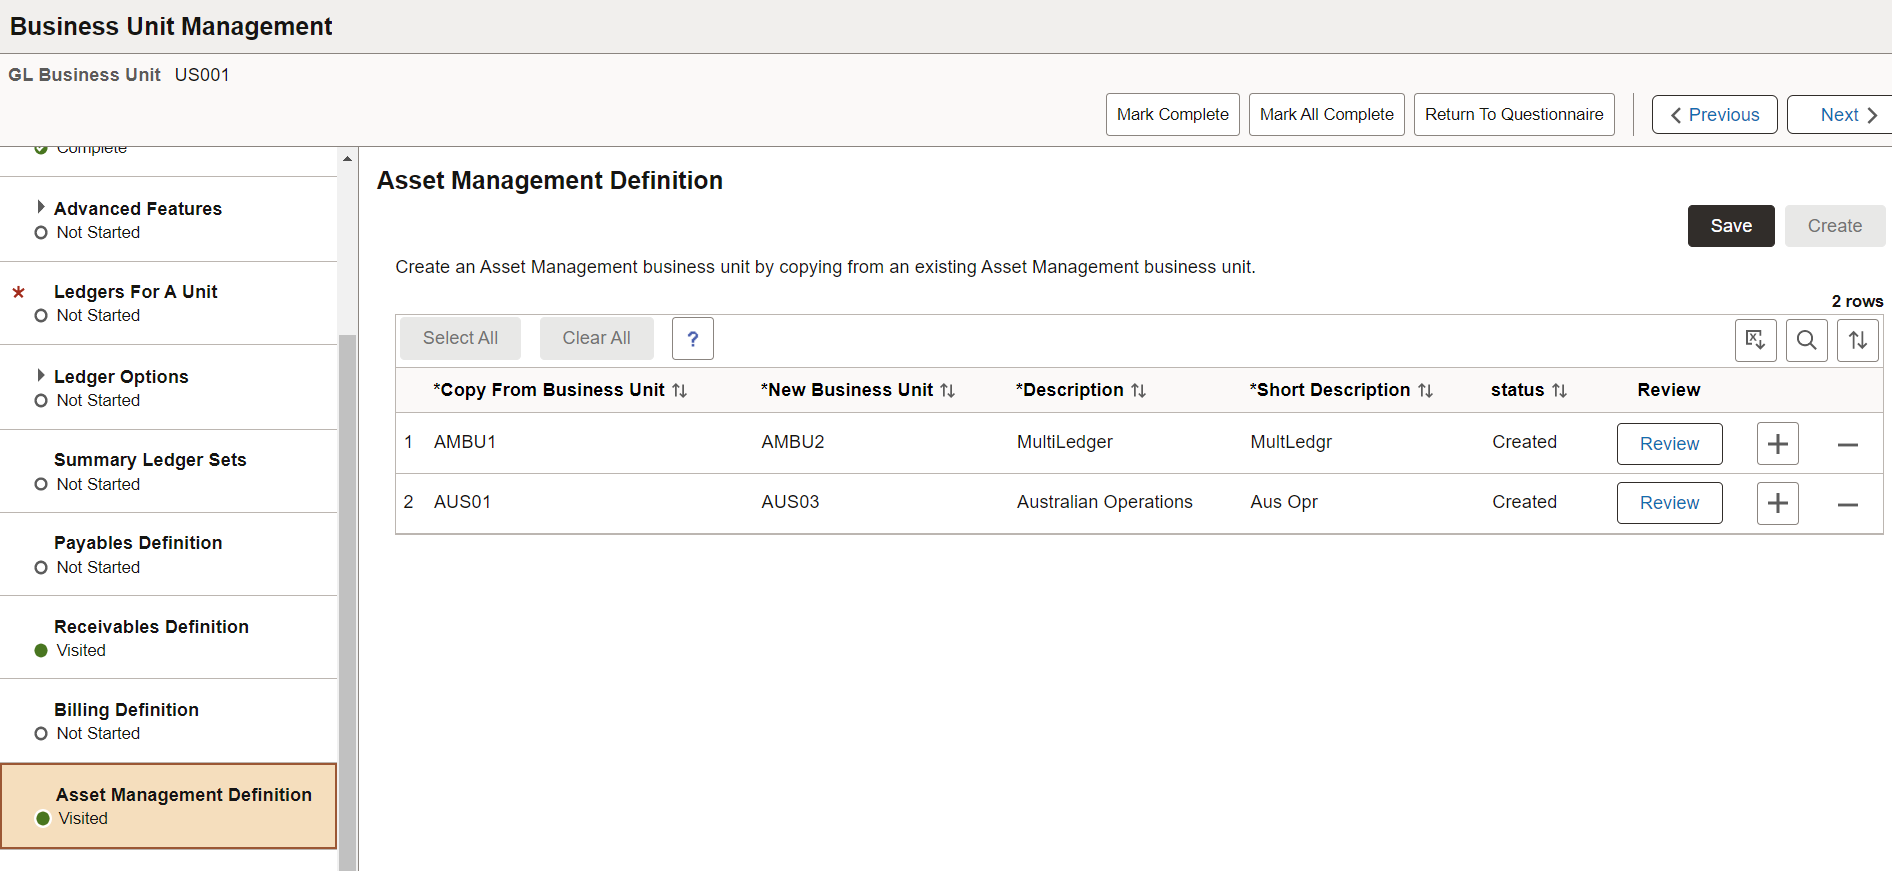 Business Unit Management - Asset Management Definition page